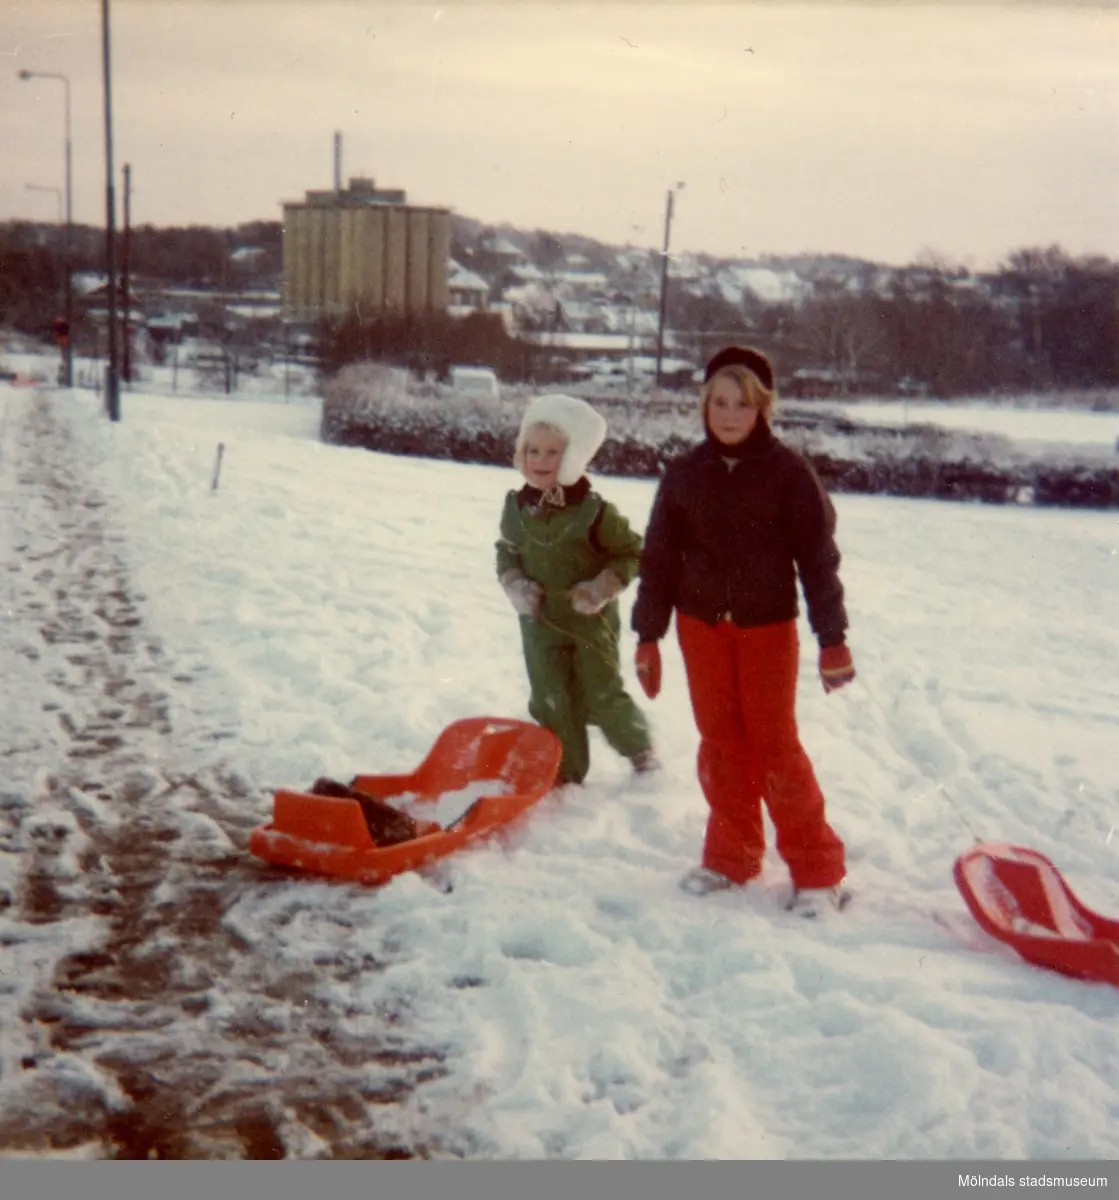 Christine och Ingela med pulkor vid Delbancogatan i Mölndal, december 1976.
Den gamla SOAB-cisternen i bakgrunden.